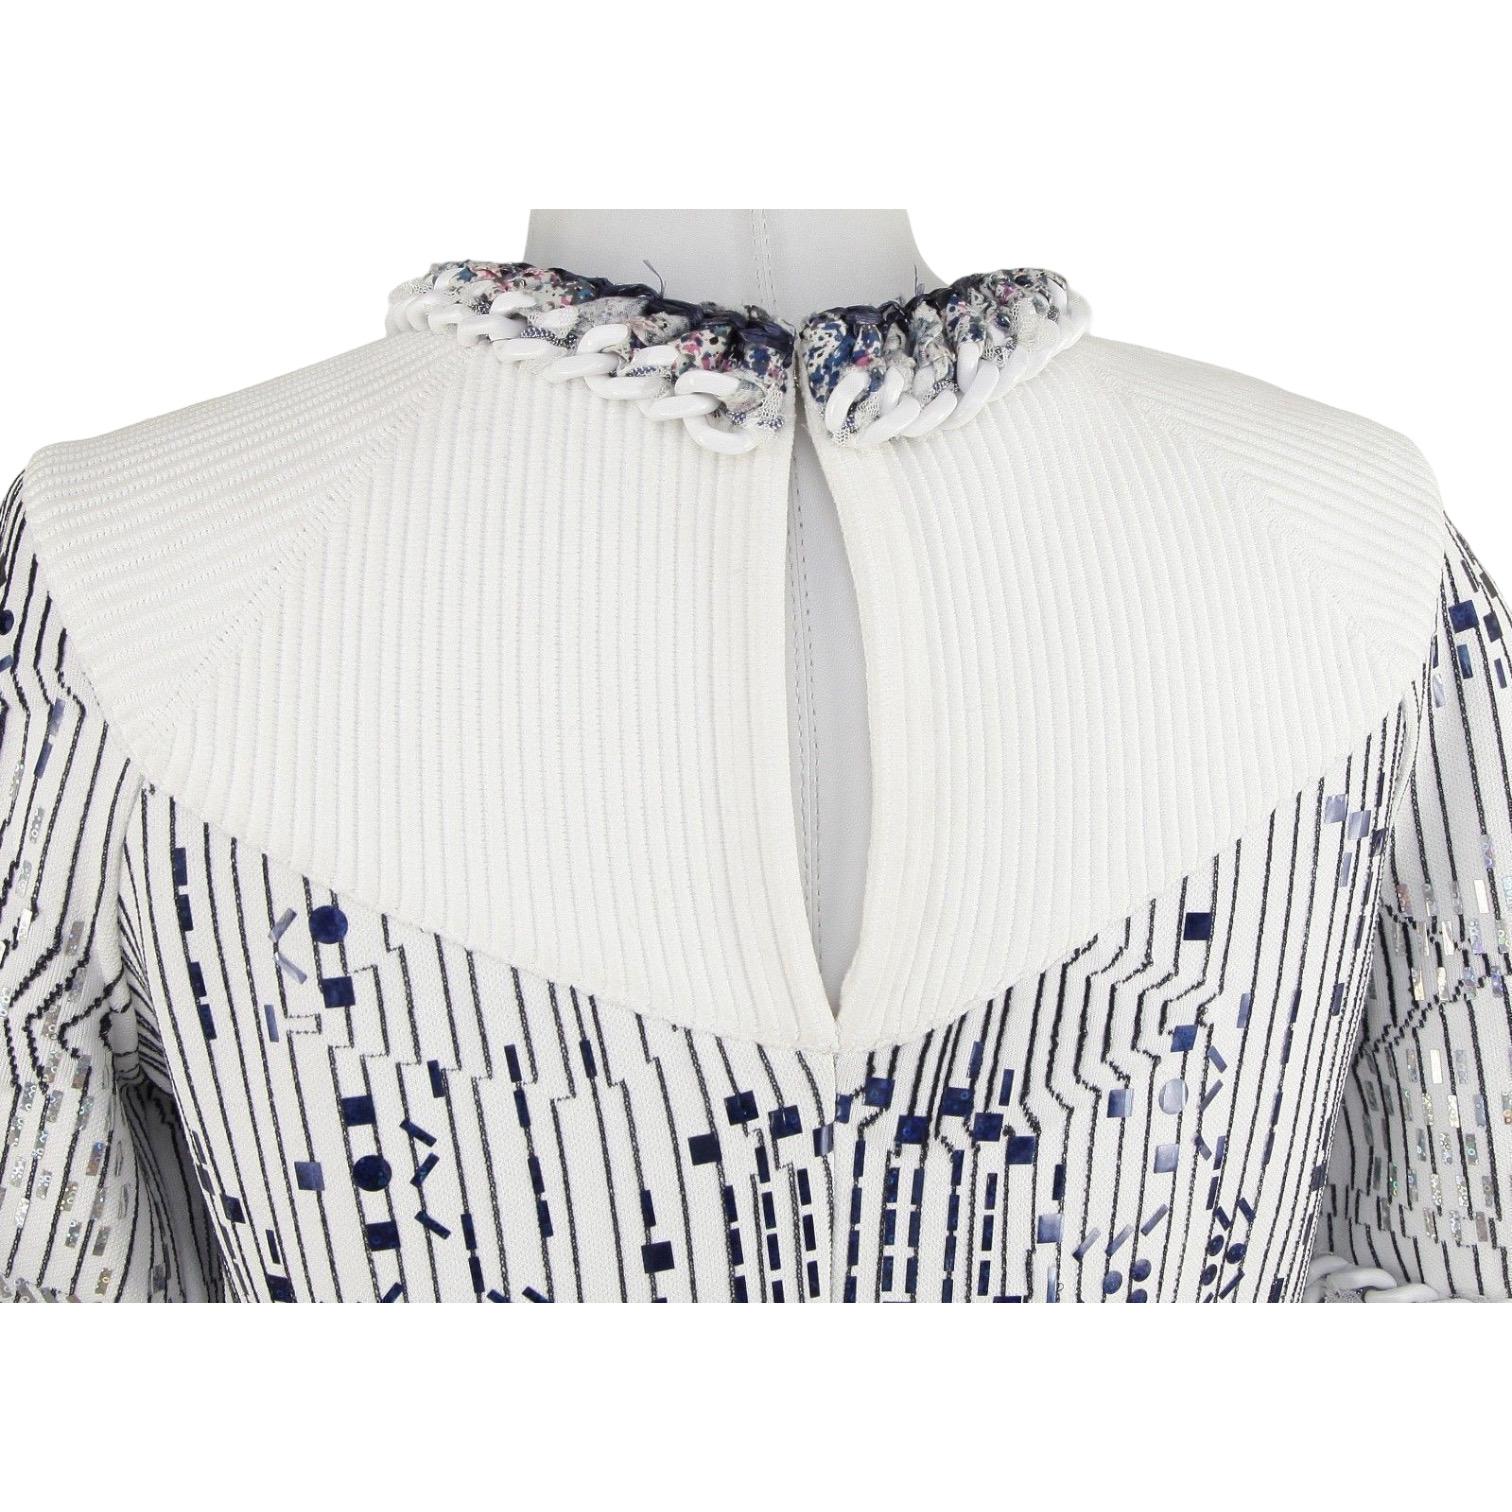 Women's CHANEL Sweater Dress White Knit Metallic Short Sleeve Silver Blue 14S 2014 Sz 40 For Sale